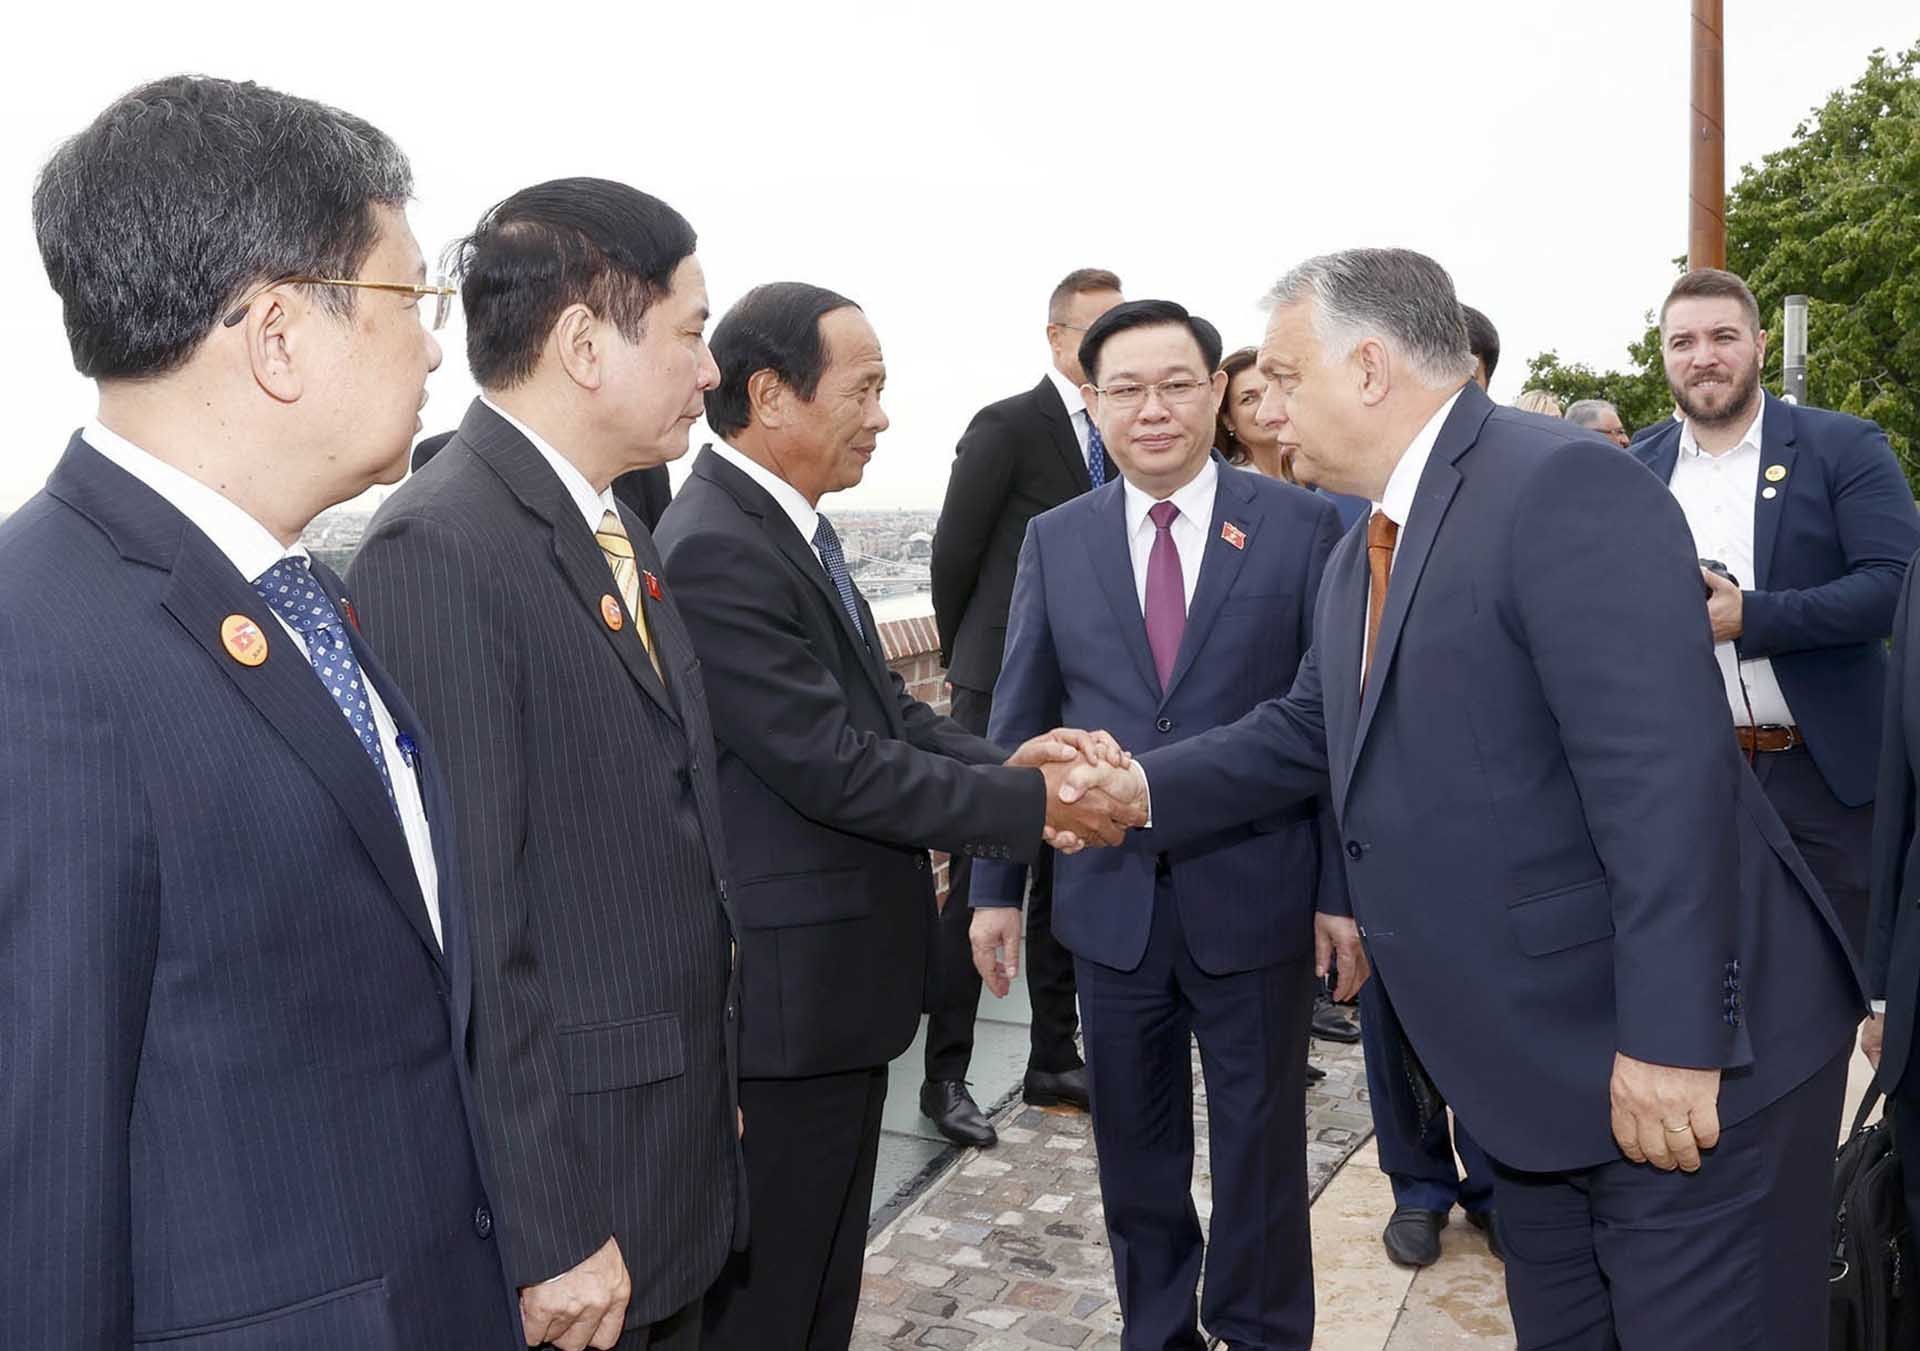 Chủ tịch Quốc hội Vương Đình Huệ giới thiệu với Thủ tướng Hungary Viktor Orbán các thành viên Đoàn đại biểu Việt Nam. (Nguồn: TTXVN)